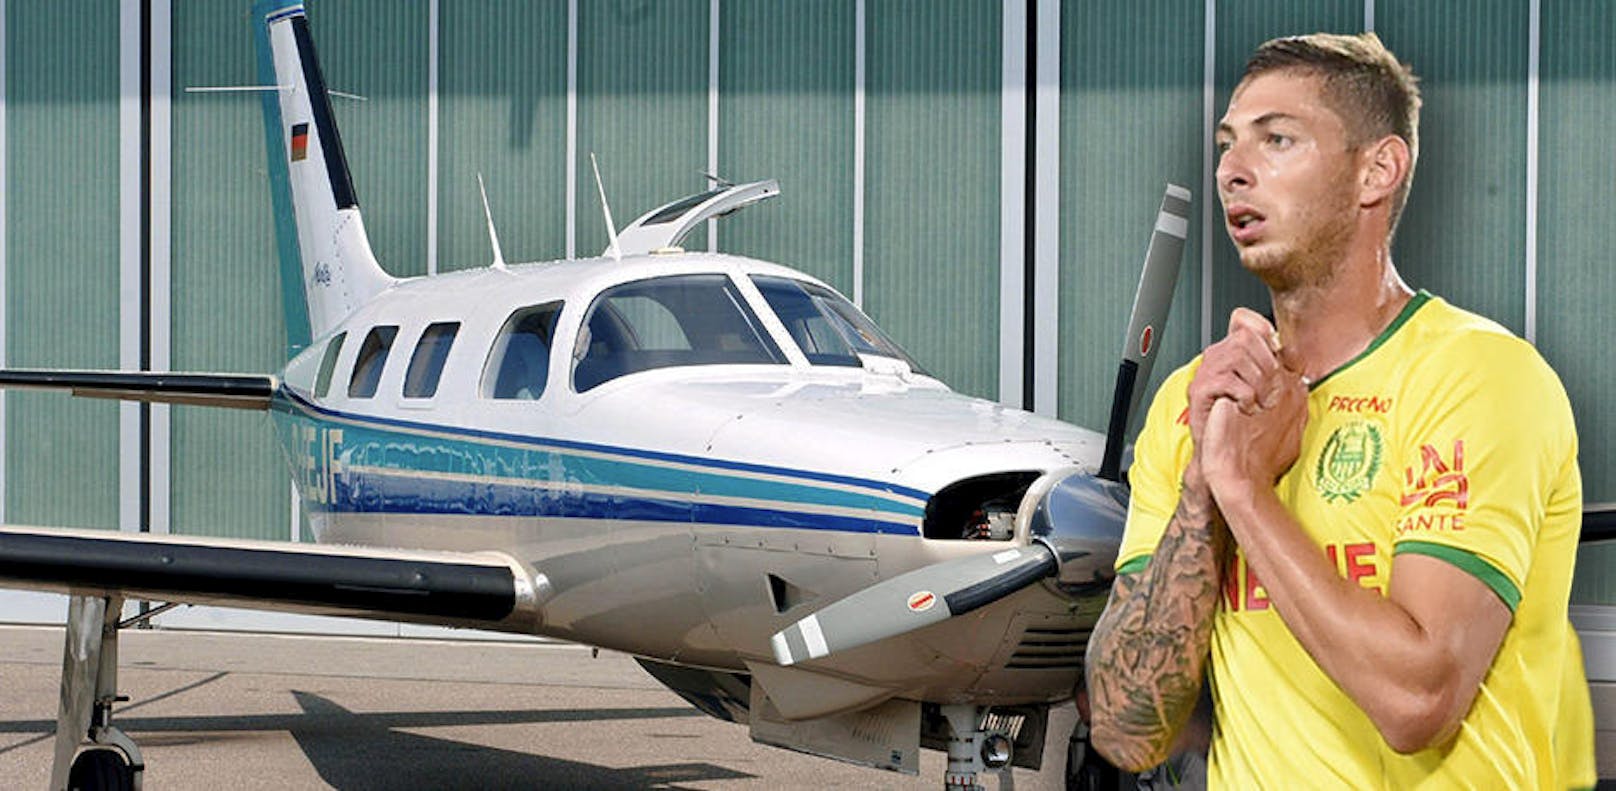 Emiliano Sala verschwand im Jänner 2019 einen Tag nach seinem Transfer auf dem Weg zum neuen Klub Cardiff vom Radar. Er stürzte über dem Ärmelkanal mit dem Kleinflugzeug ab, noch fehlt jede Spur.

Leider ist er nicht der erste Sport-Star, der in eine Absturz-Tragödie verwickelt war.